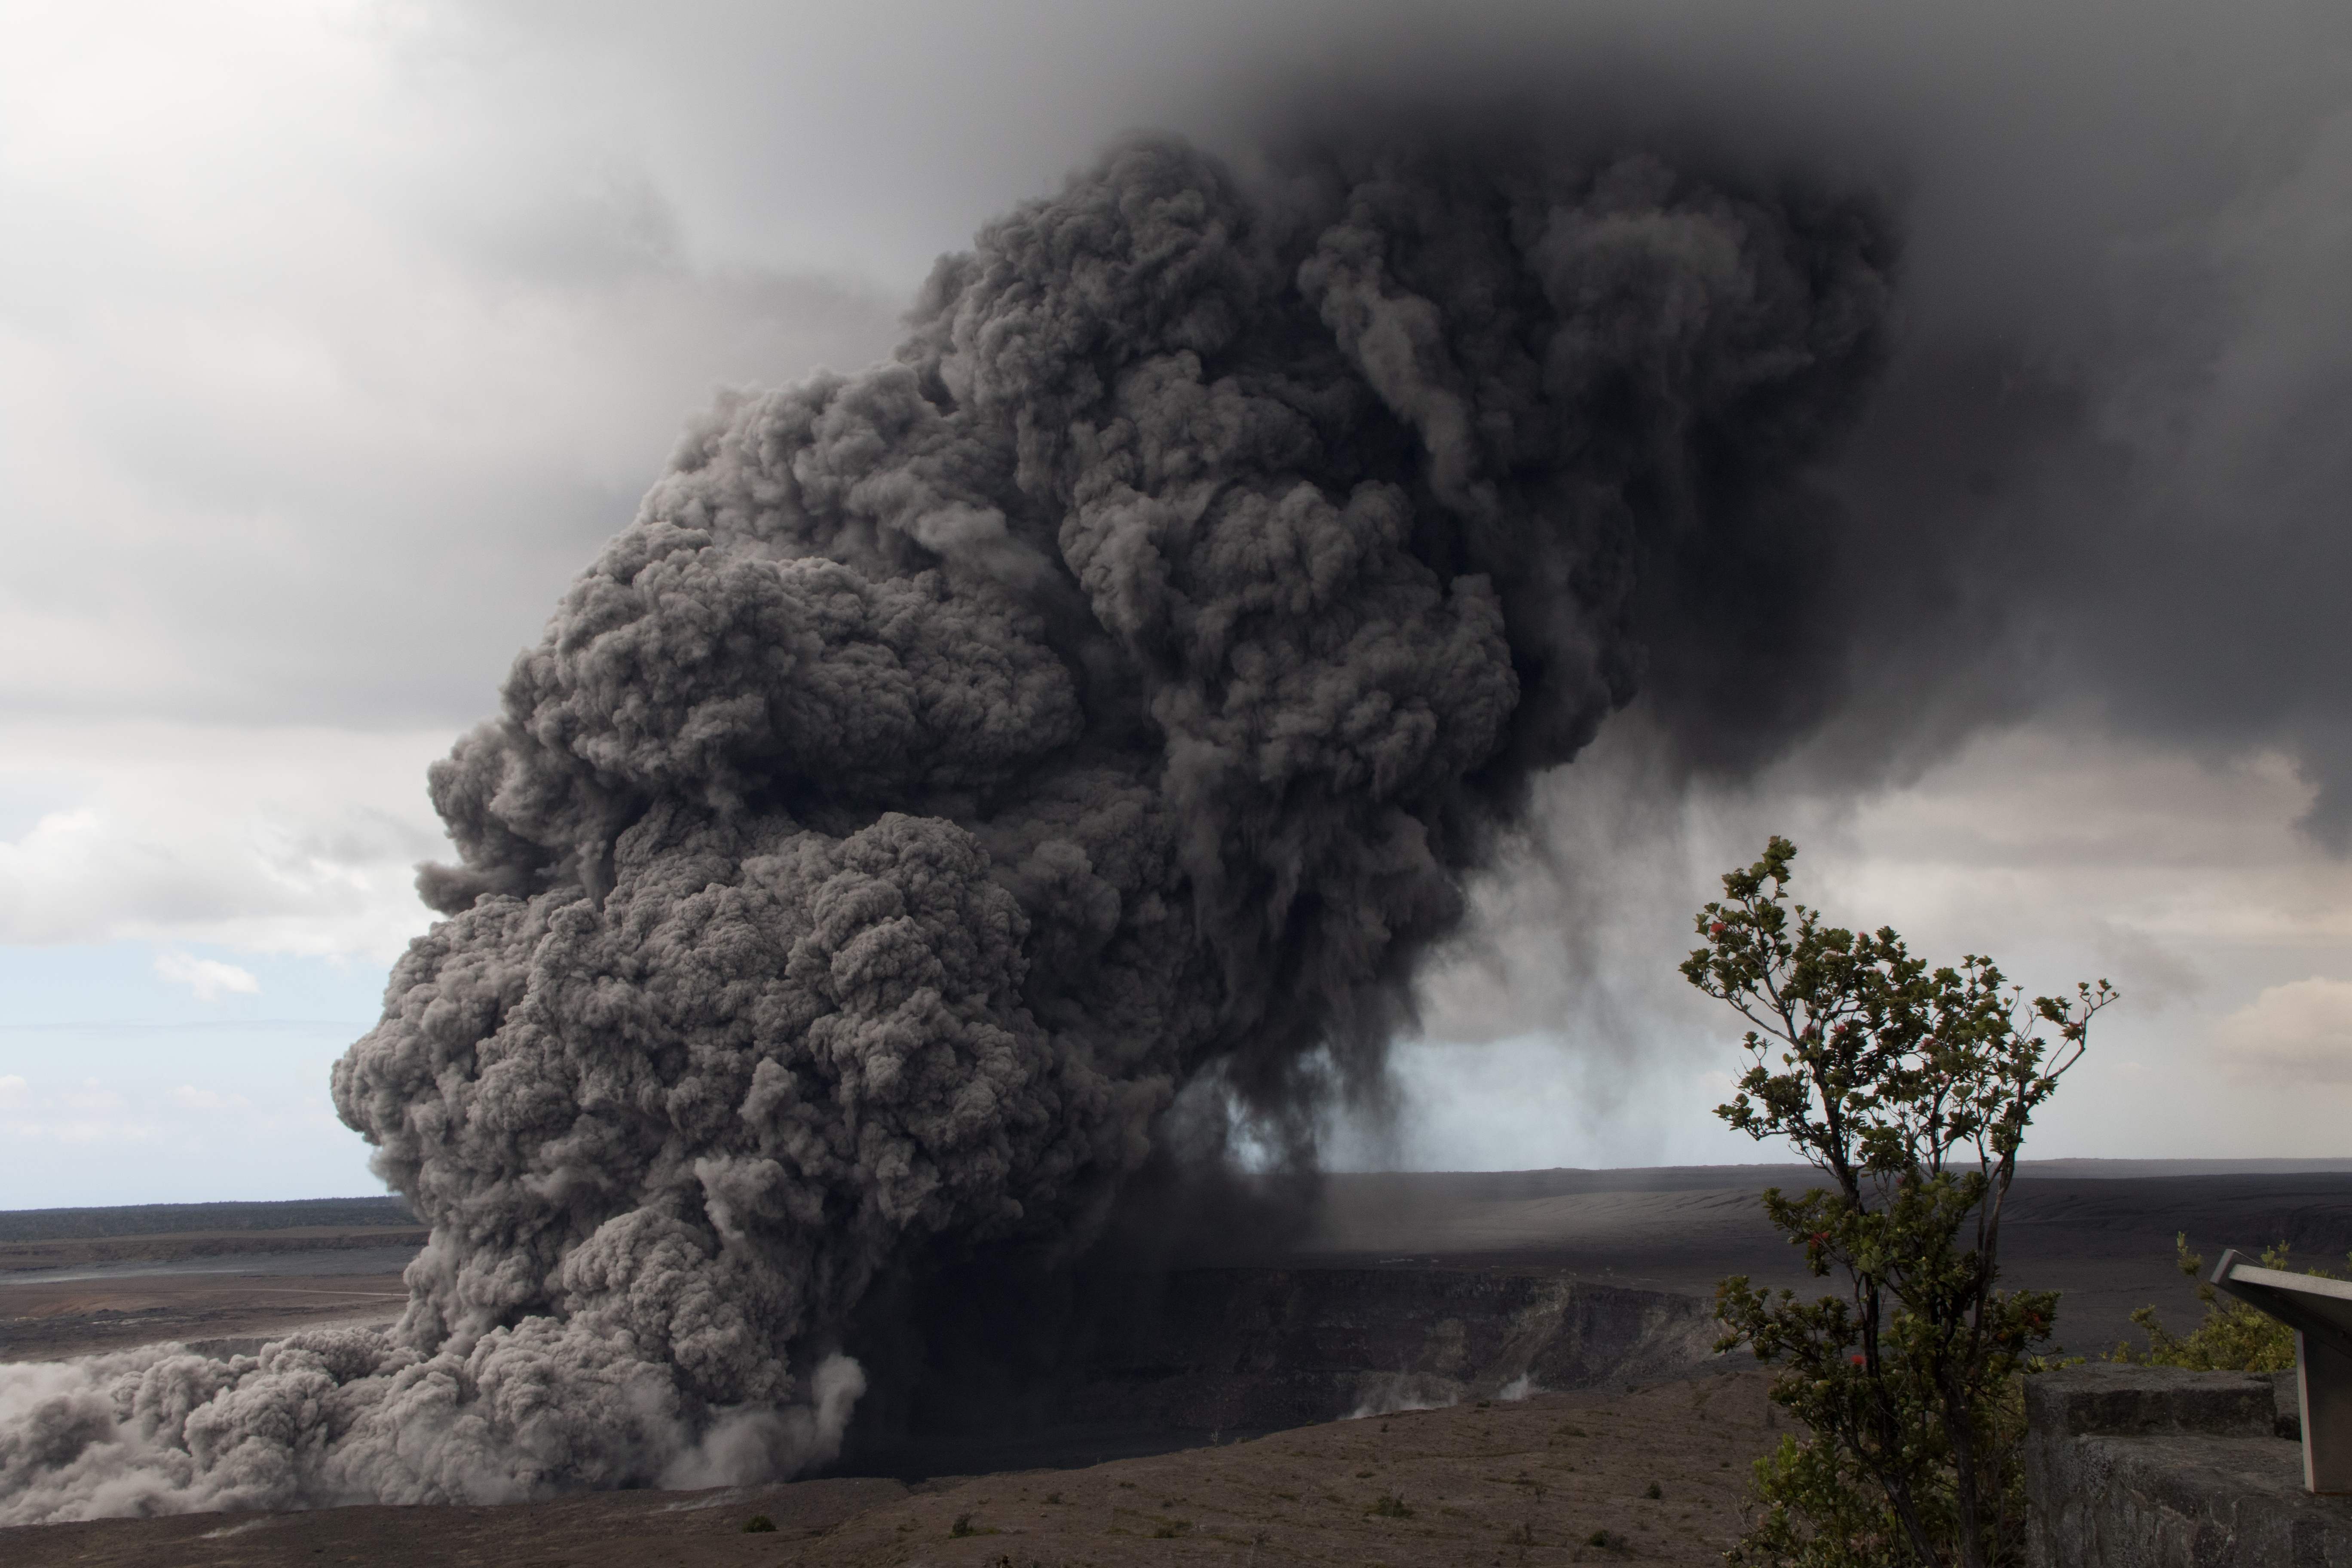 انفجار فى البركان وتصاعد الدخان